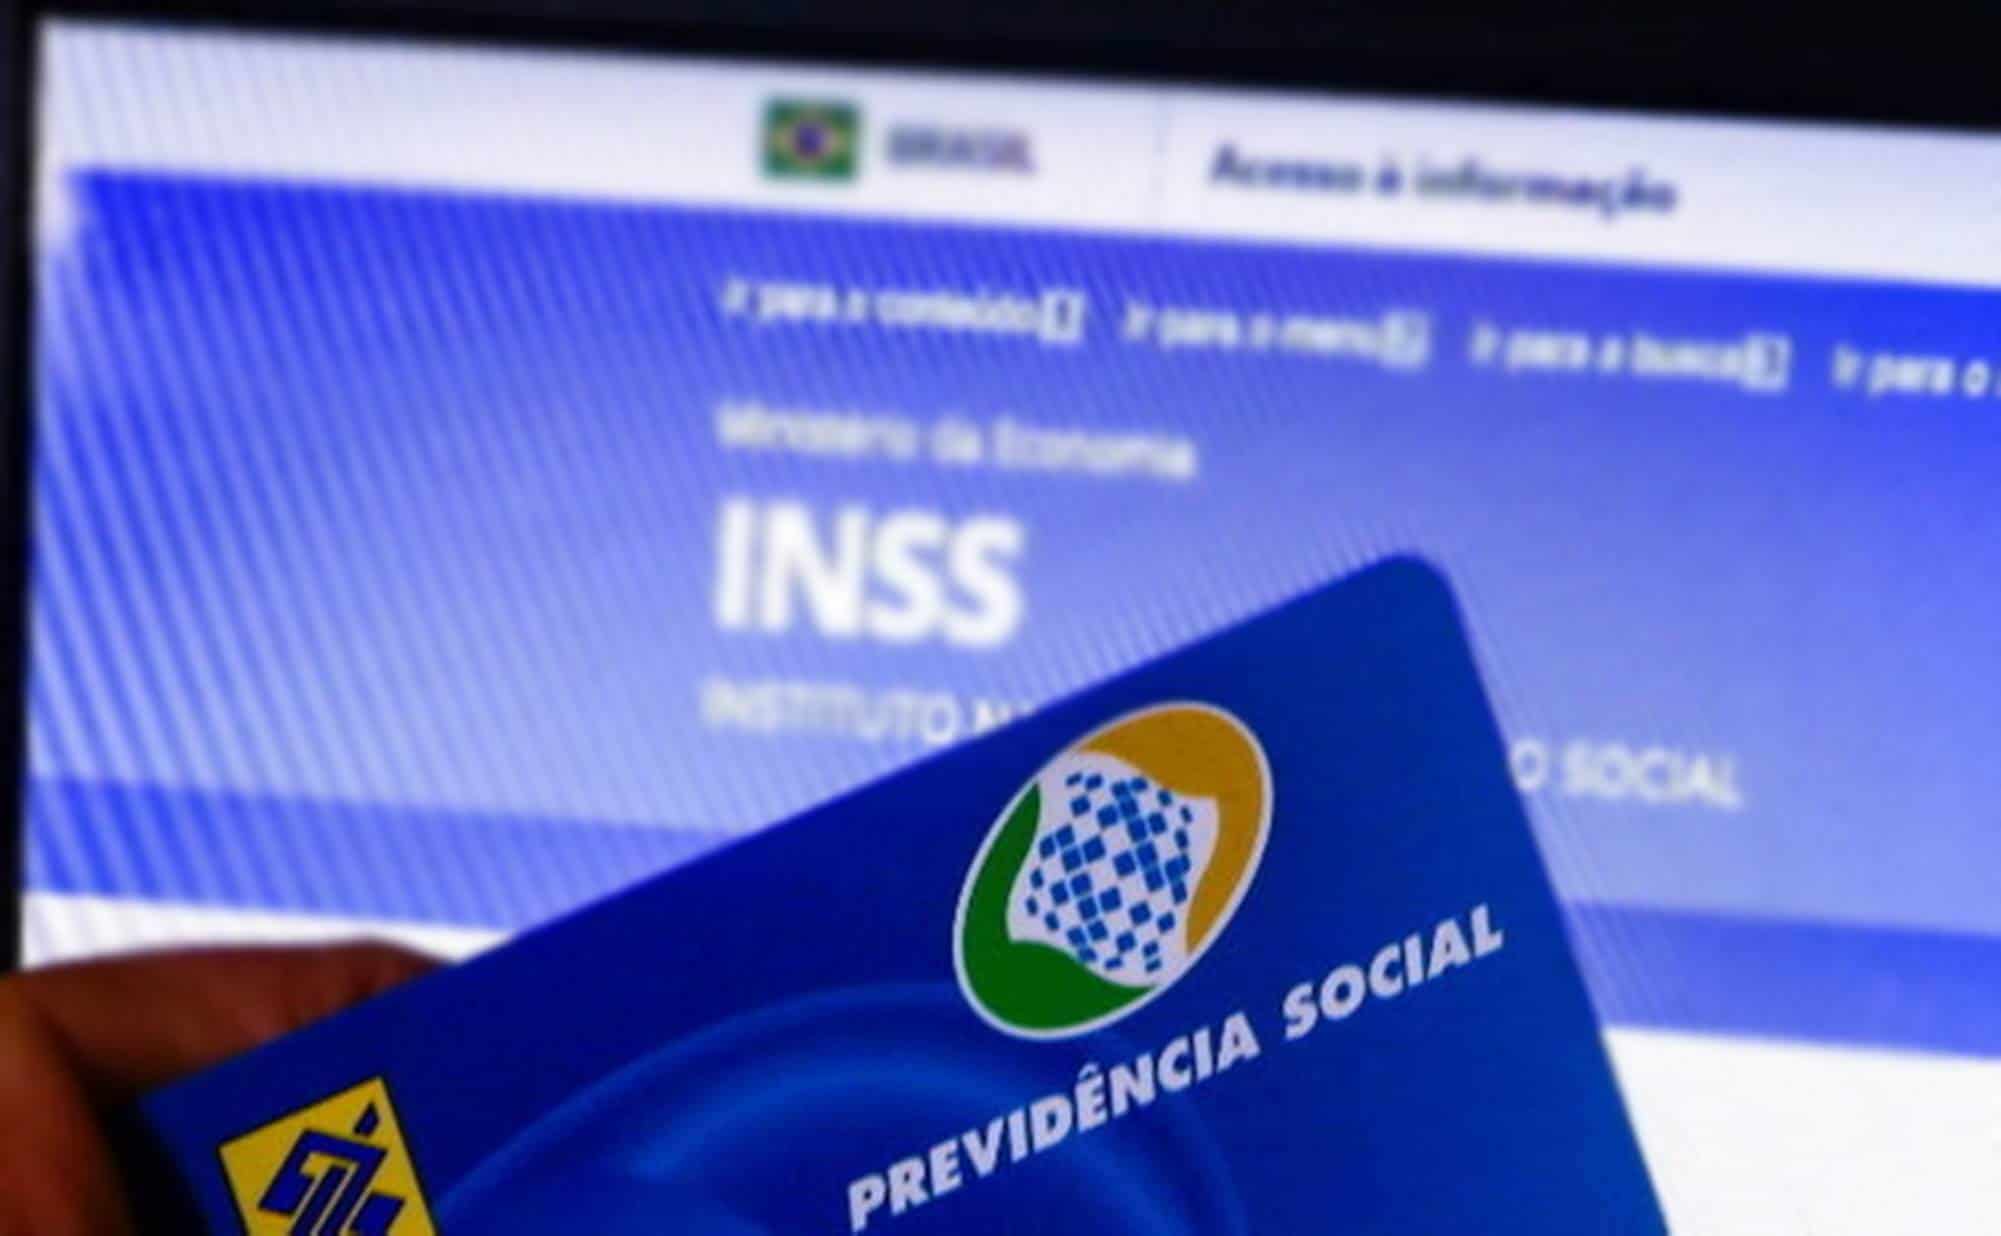 INSS já tem data para começar a pagar atrasados de aposentados e pensionistas